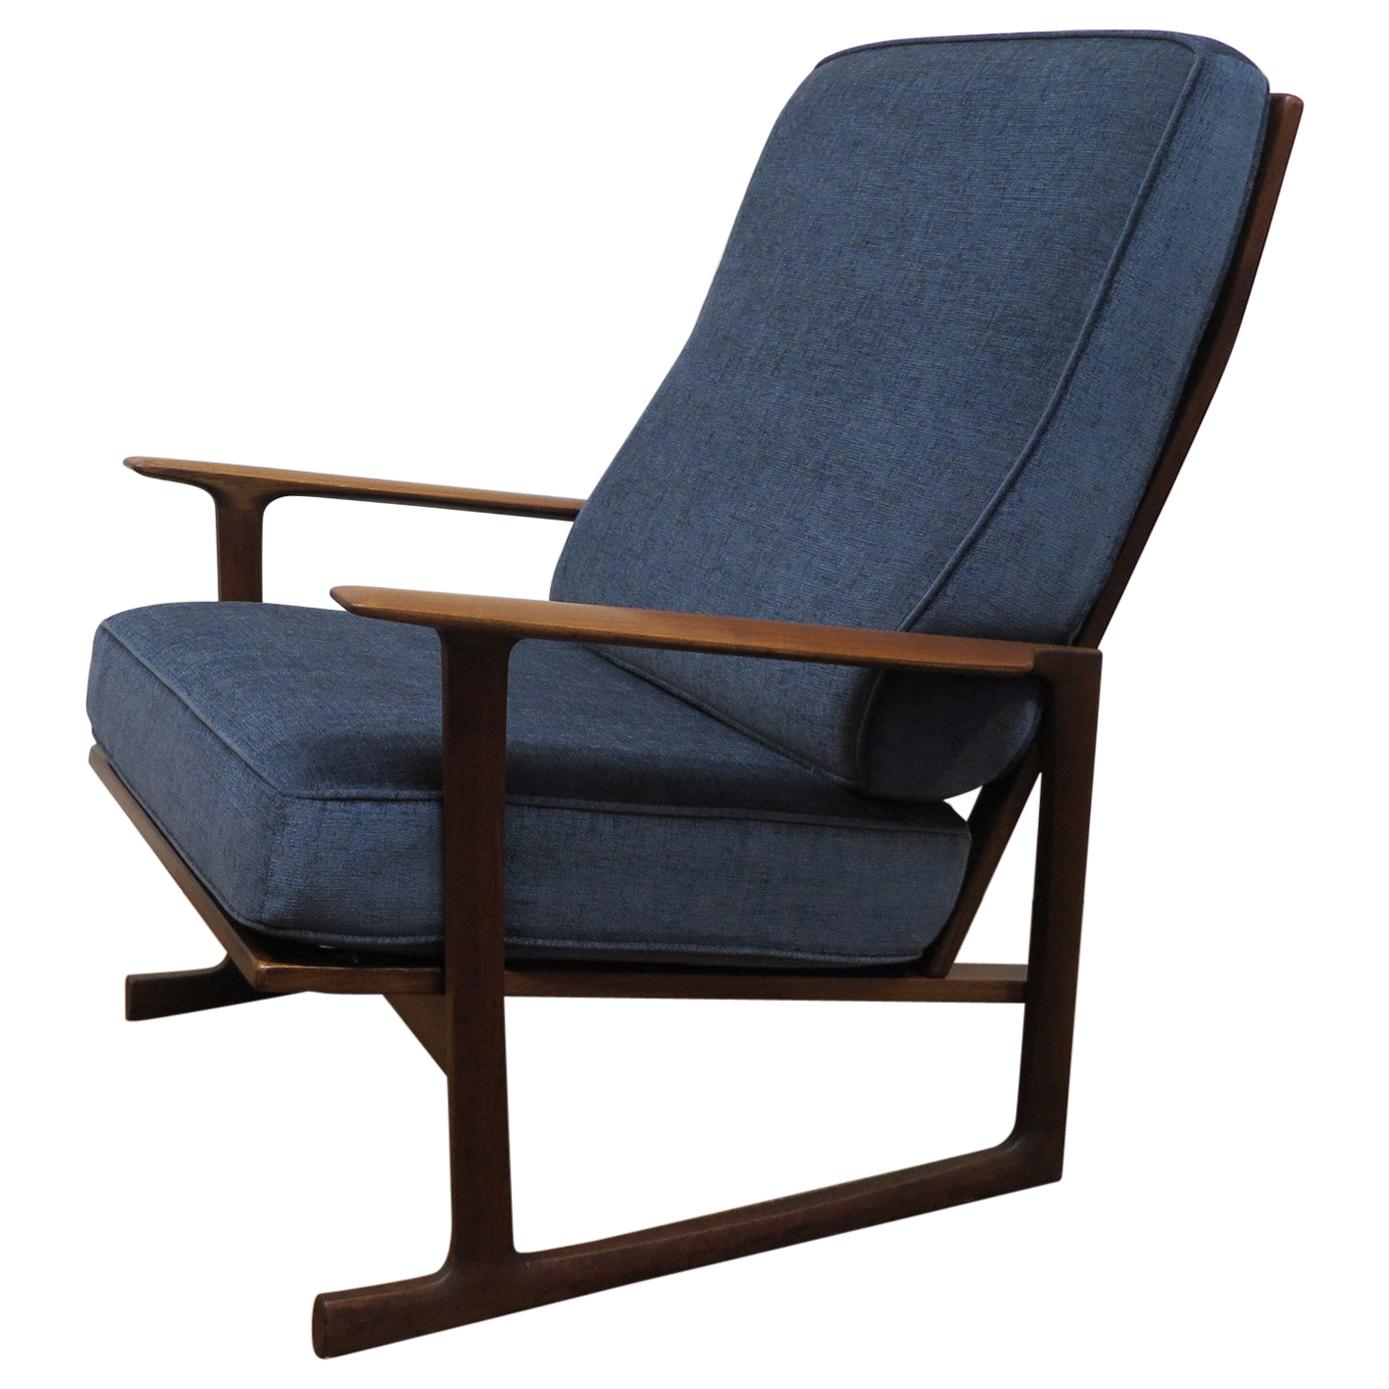 Ib Kofod-Laresn Lounge Chair